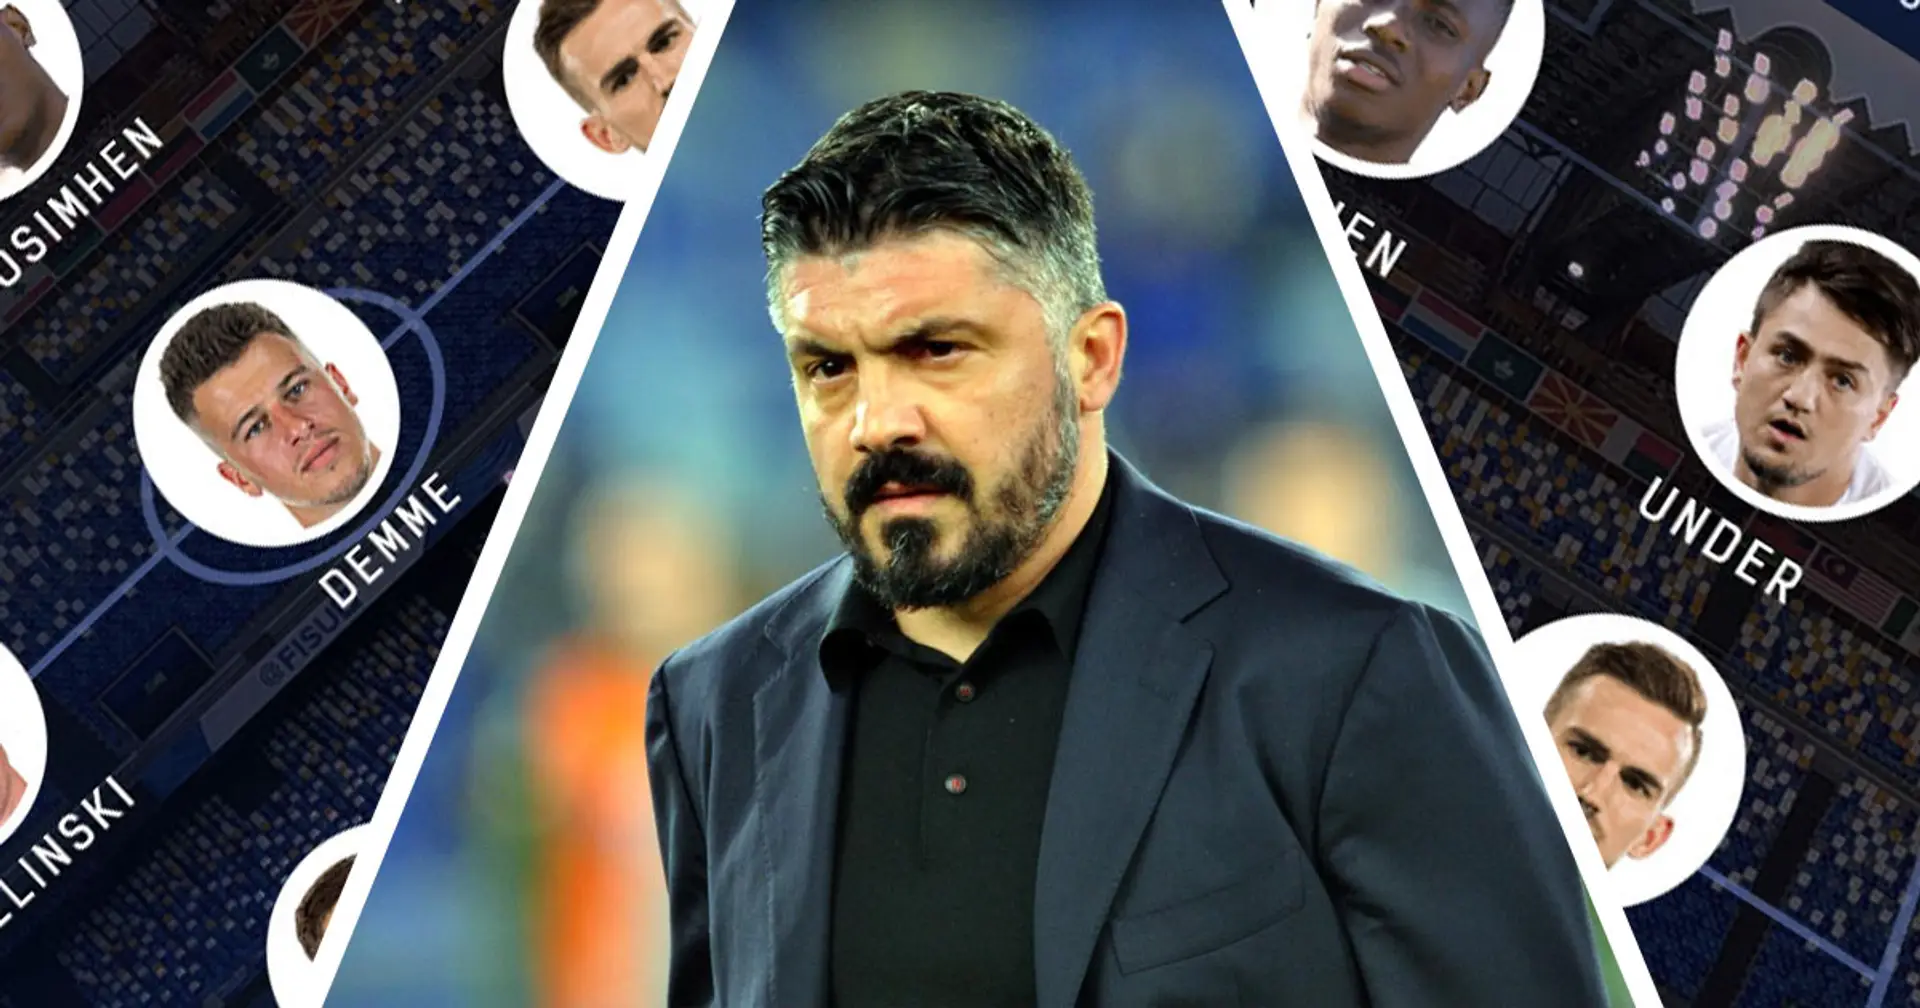 3 possibili formazioni del Napoli con i giocatori attualmente in rosa e i possibili acquisti di mercato